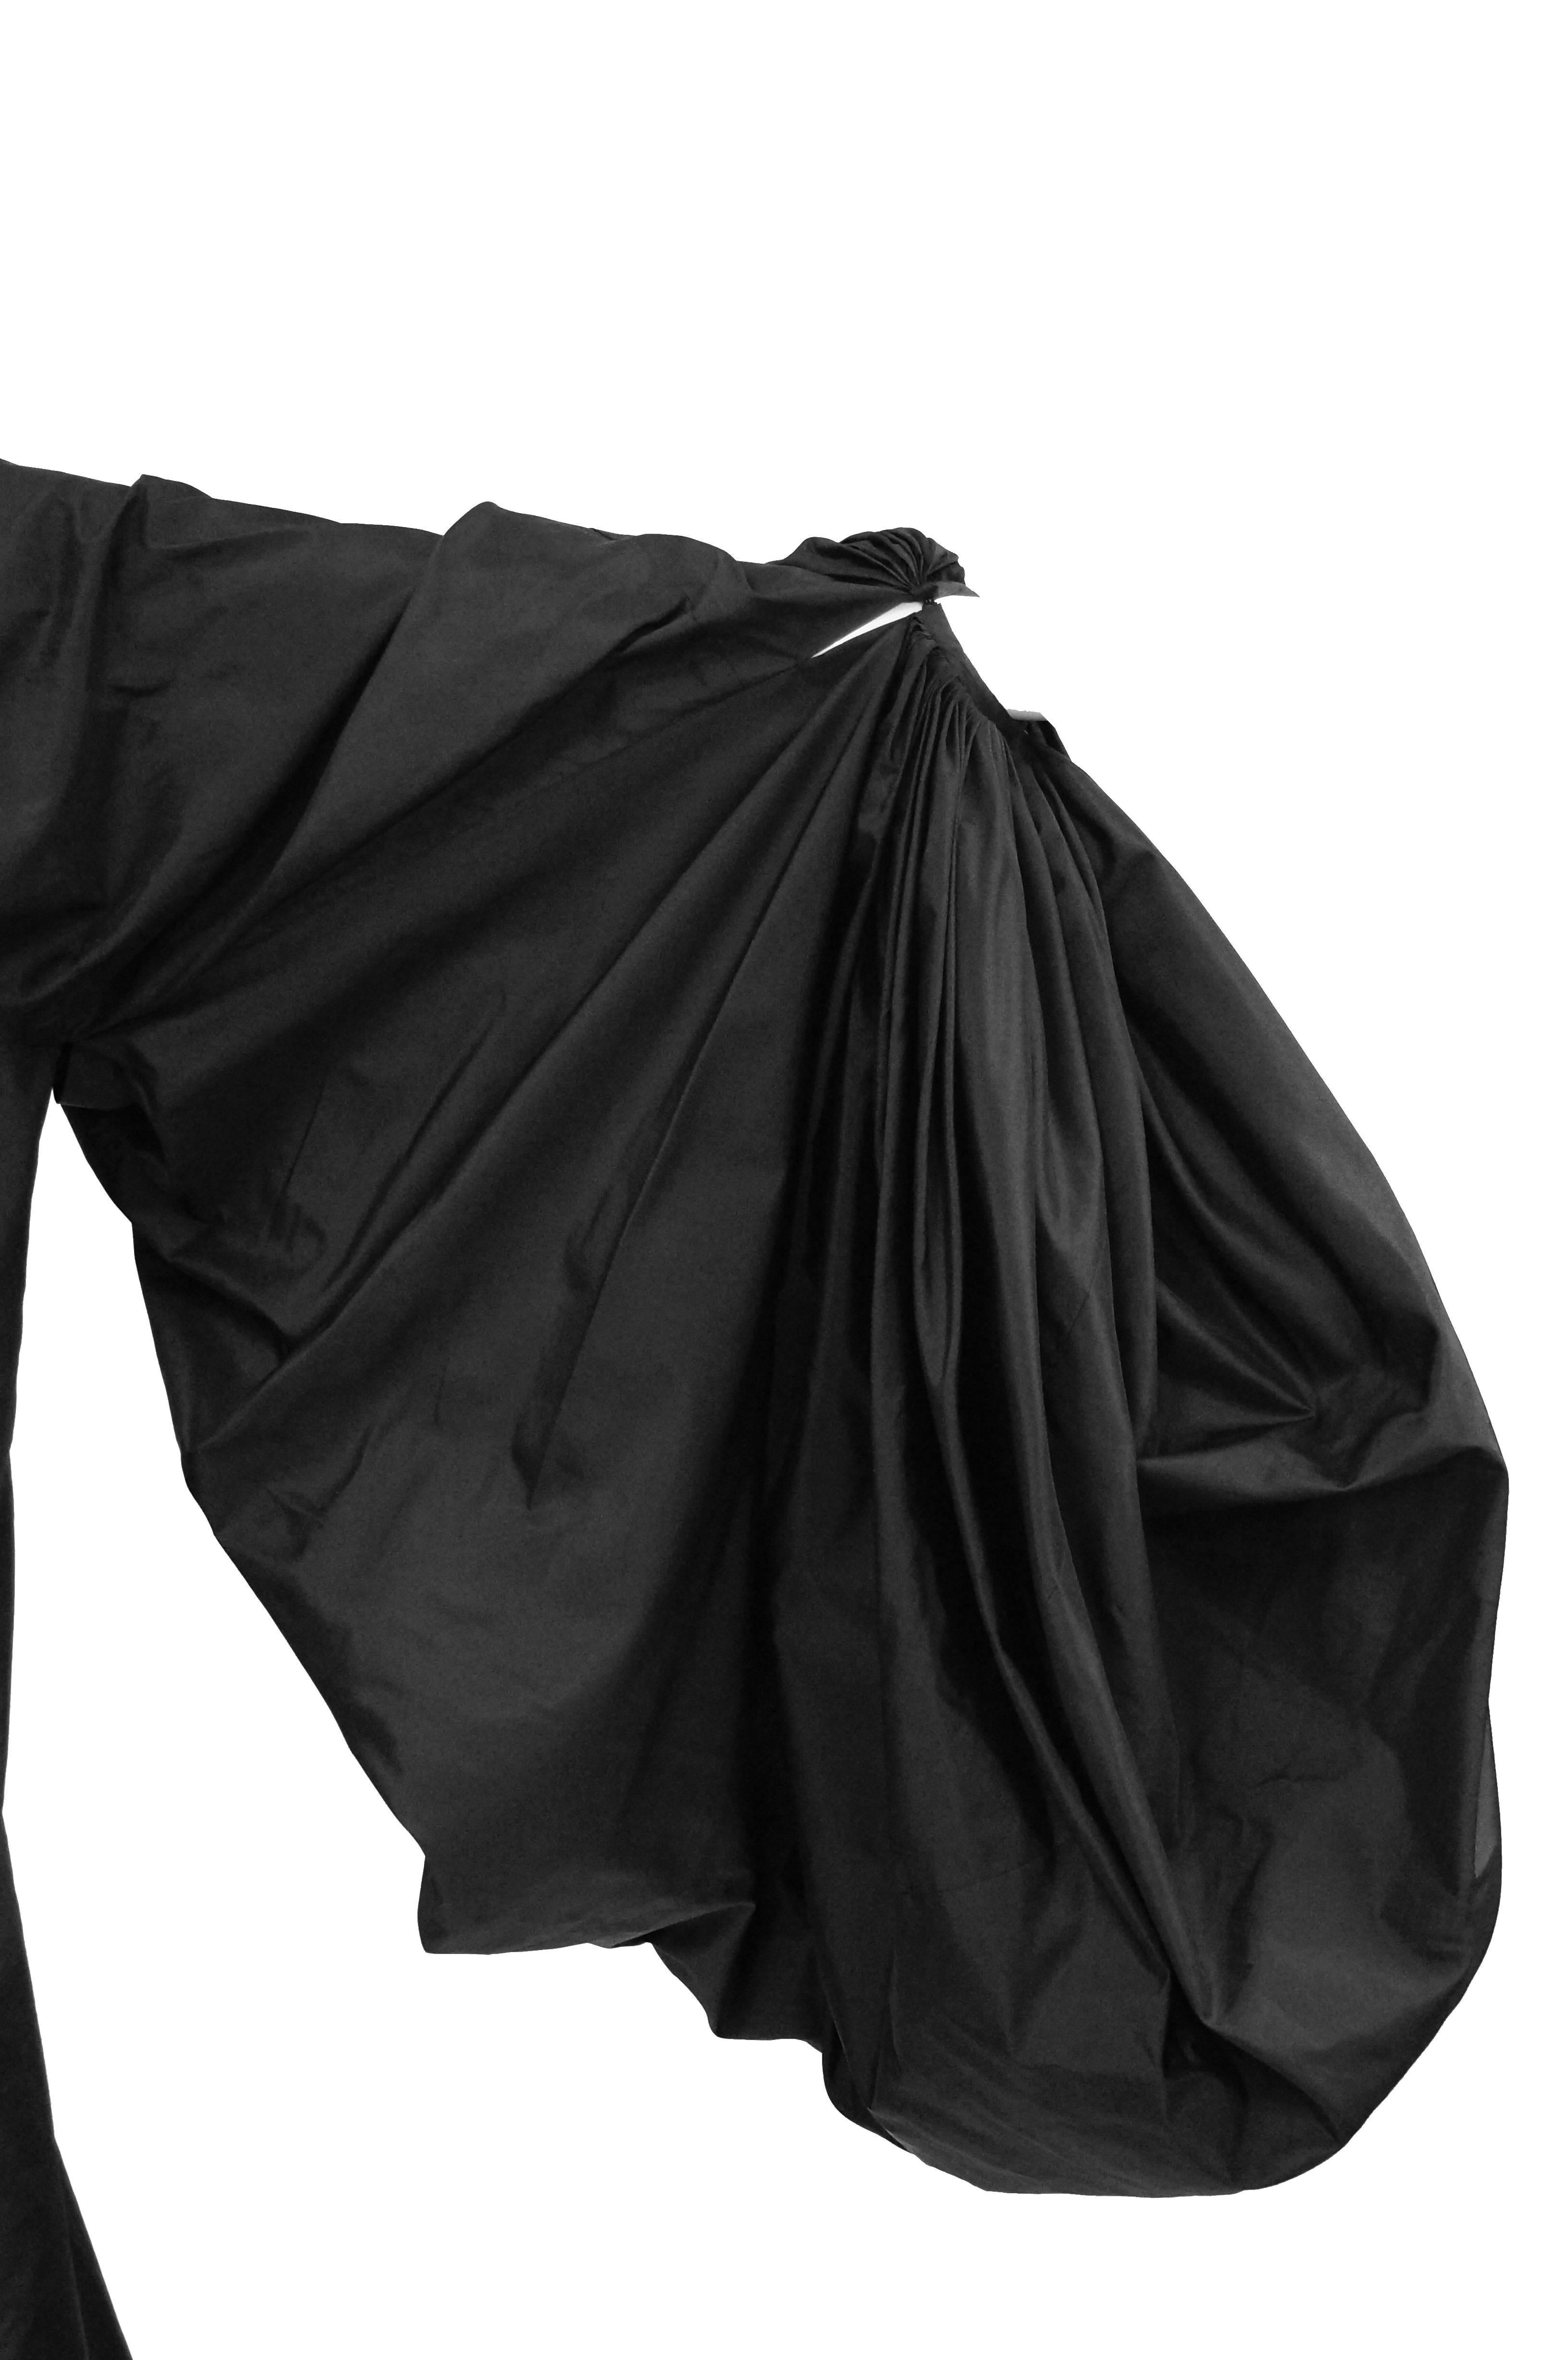 Madame Grès - Robe noire en soie haute couture 